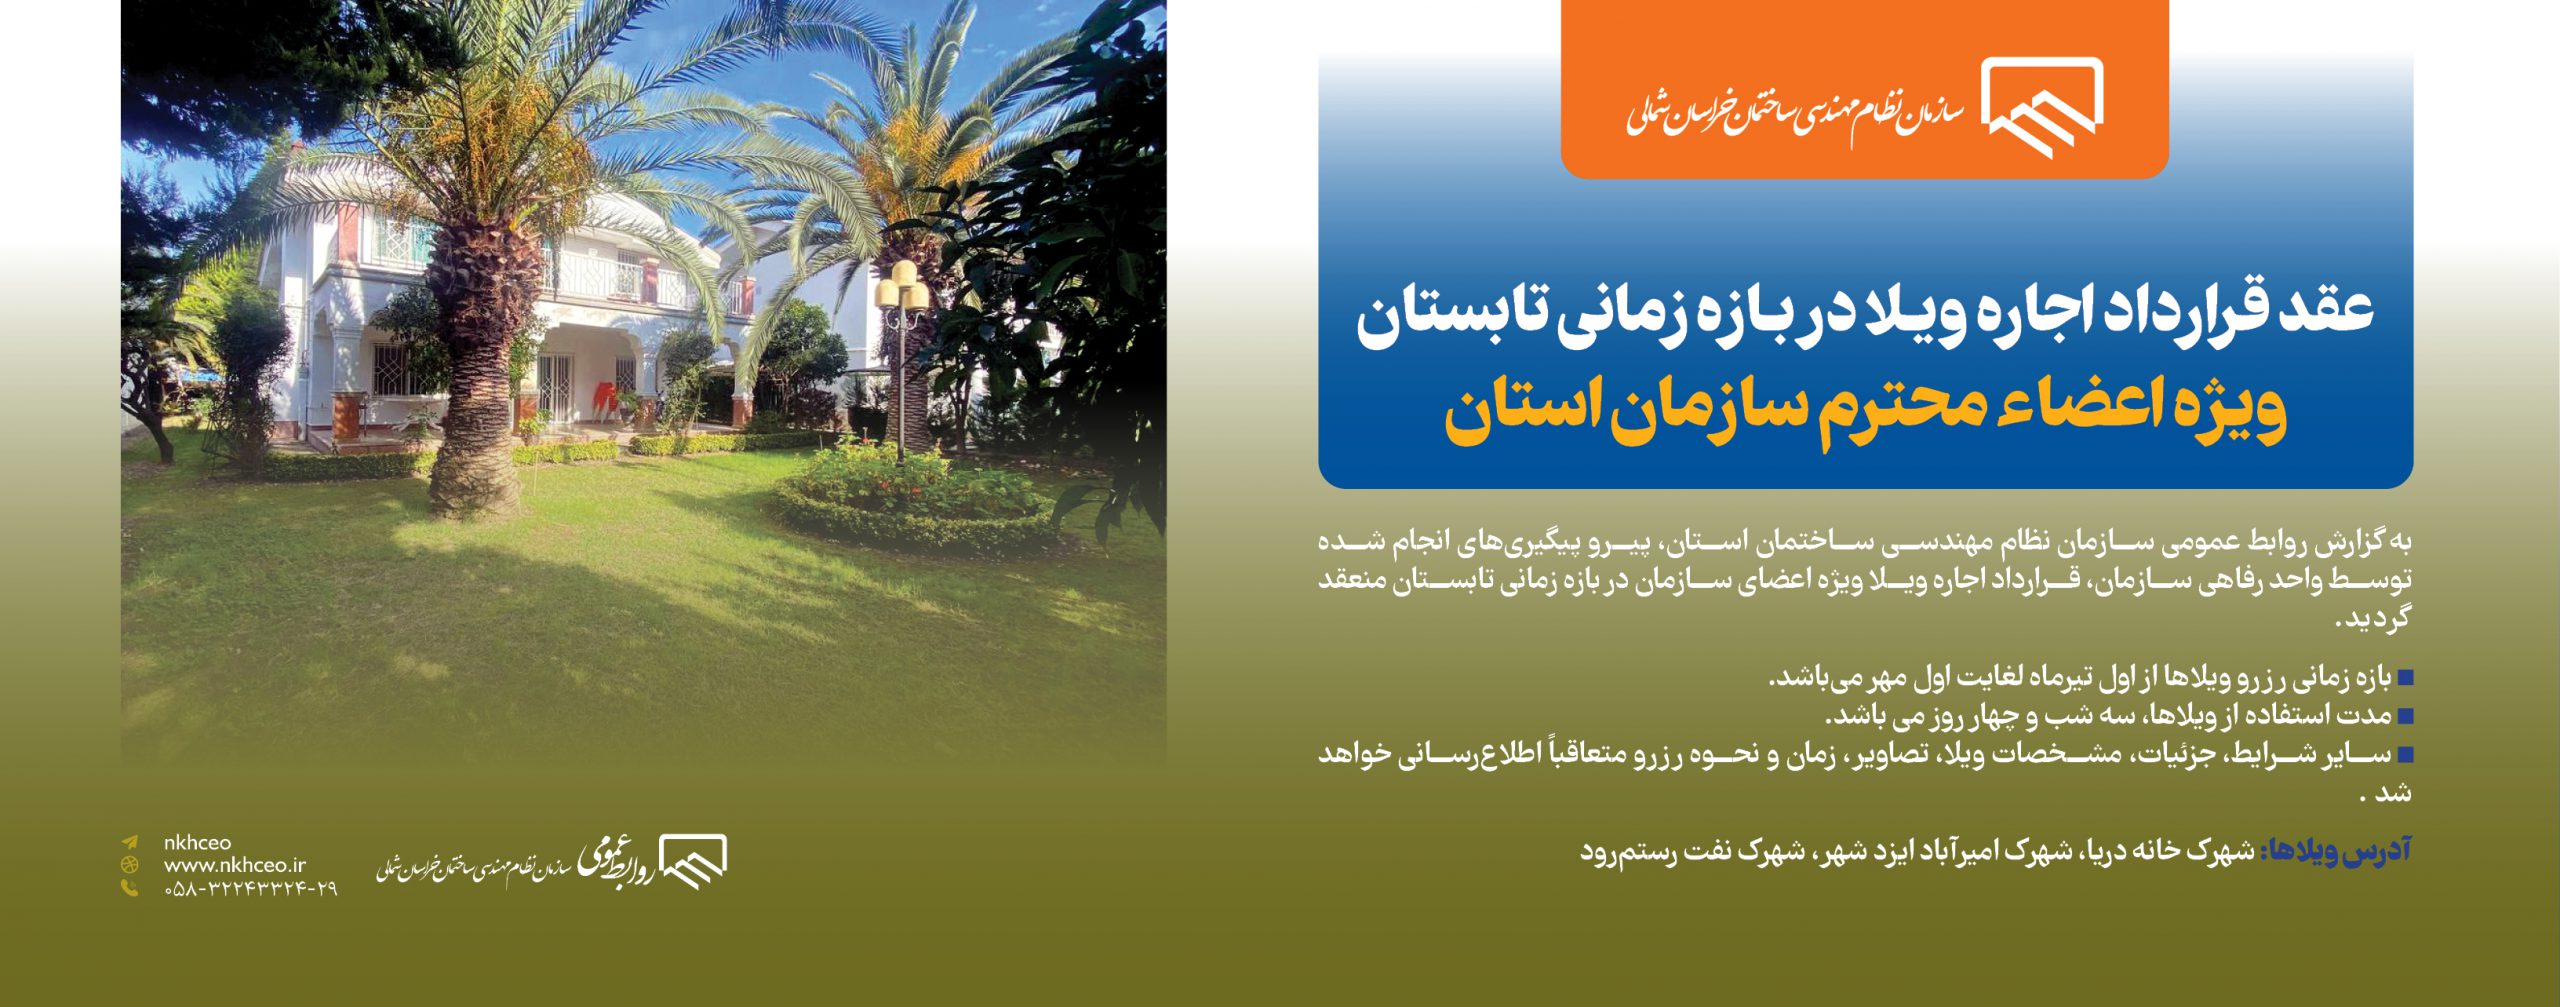 عقد قرارداد اجاره ویـلا در بـازه زمانی تابستان ویژه اعضاء محترم سازمان استان